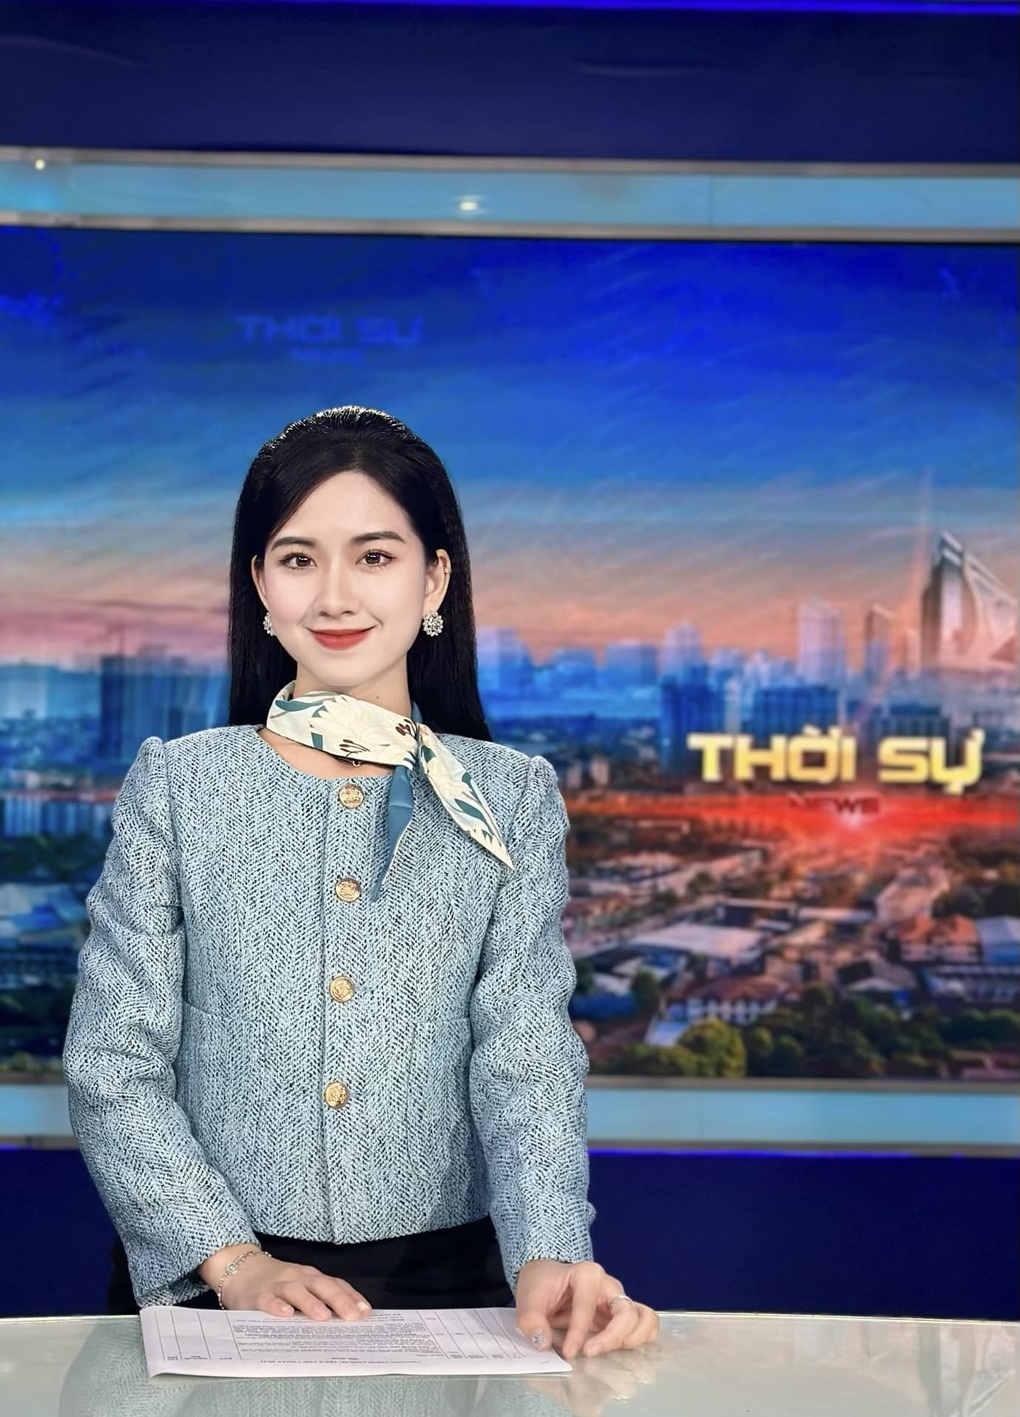 Nữ MC Nghệ An gây sốt trên mạng bởi nhan sắc xinh đẹp - 1